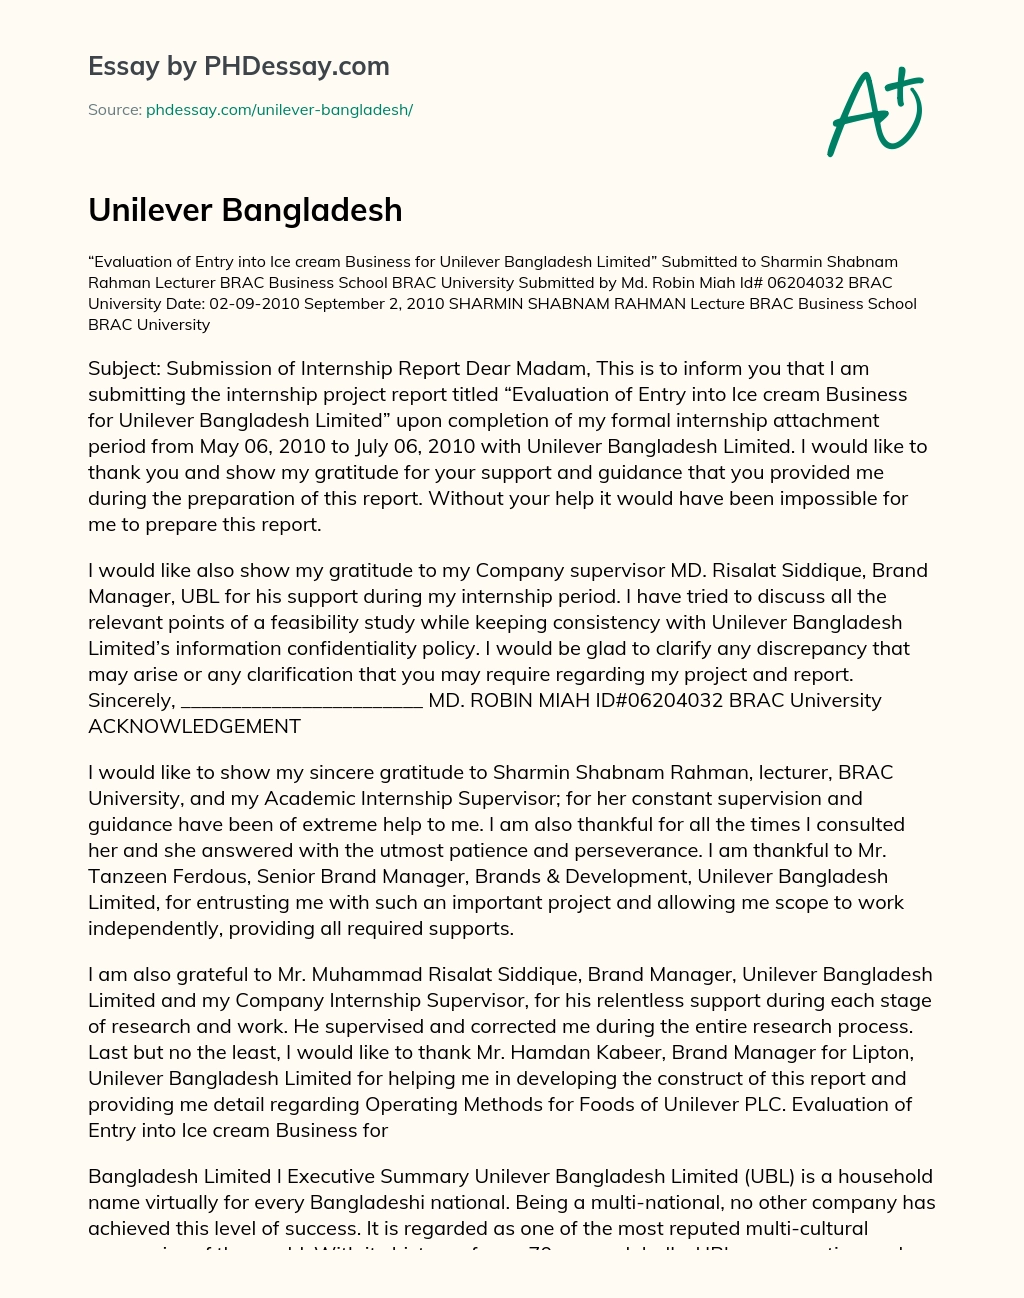 Unilever Bangladesh essay